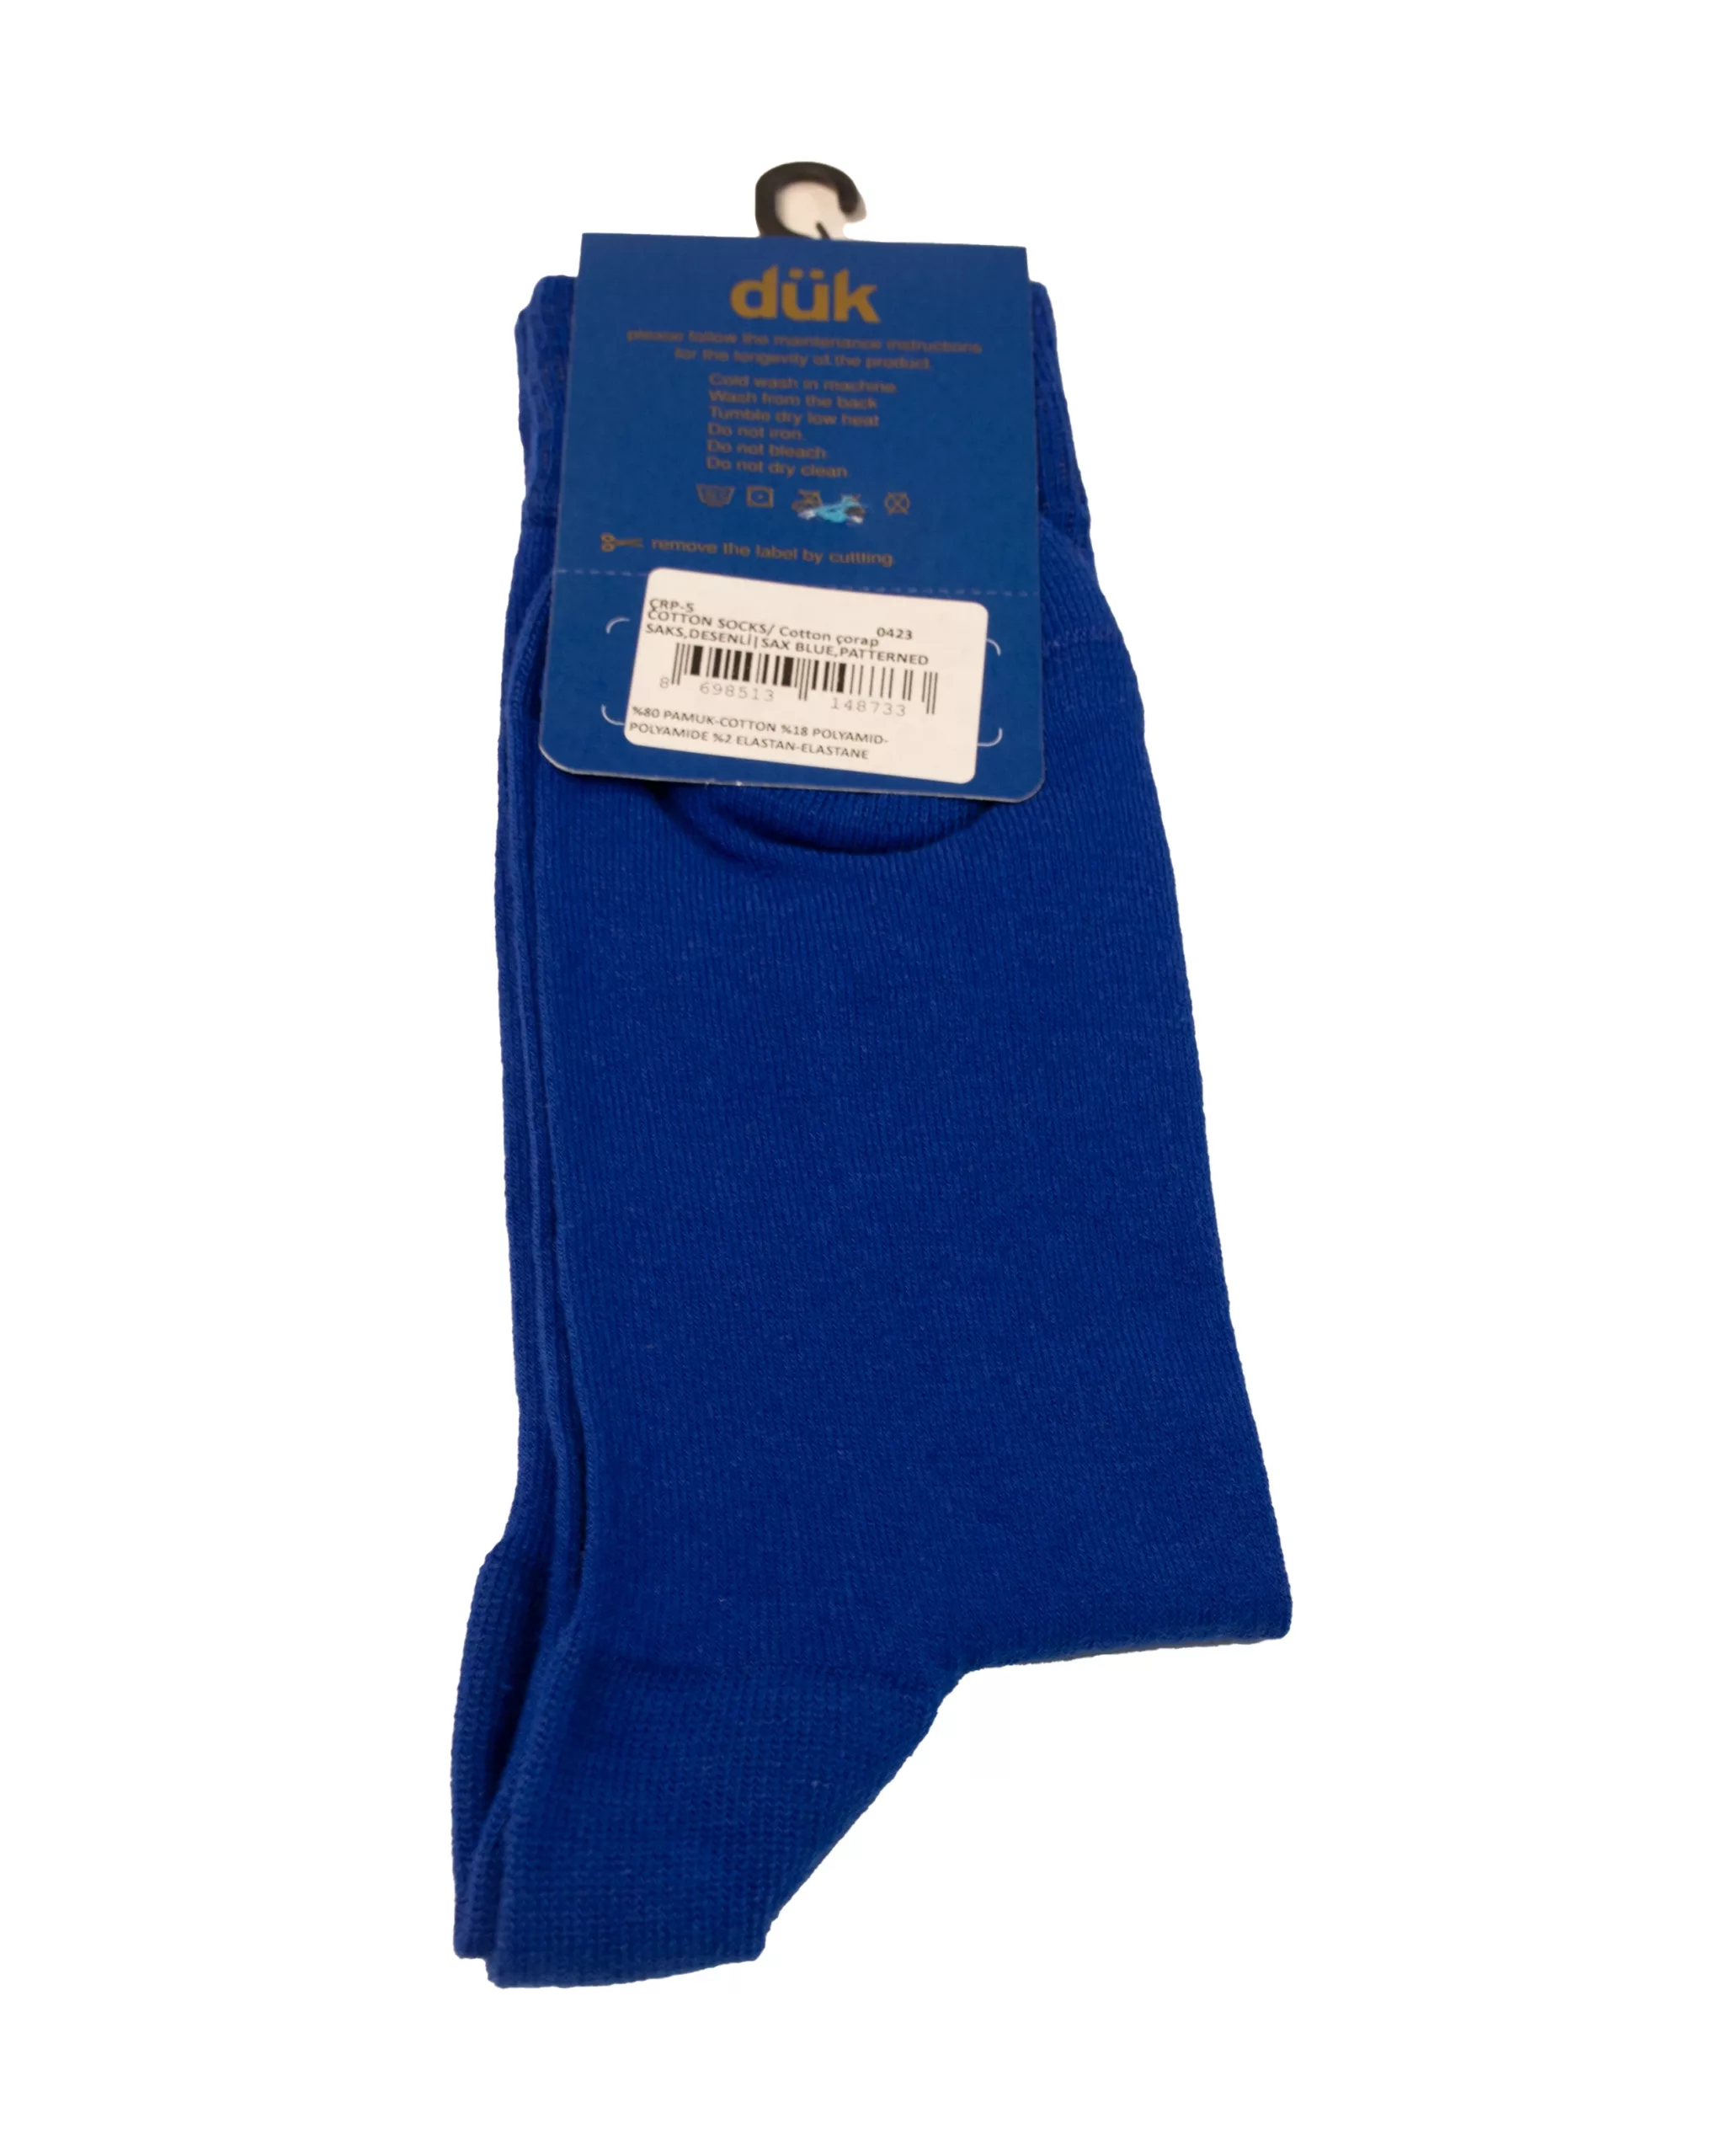 Viareggio navy blue socks